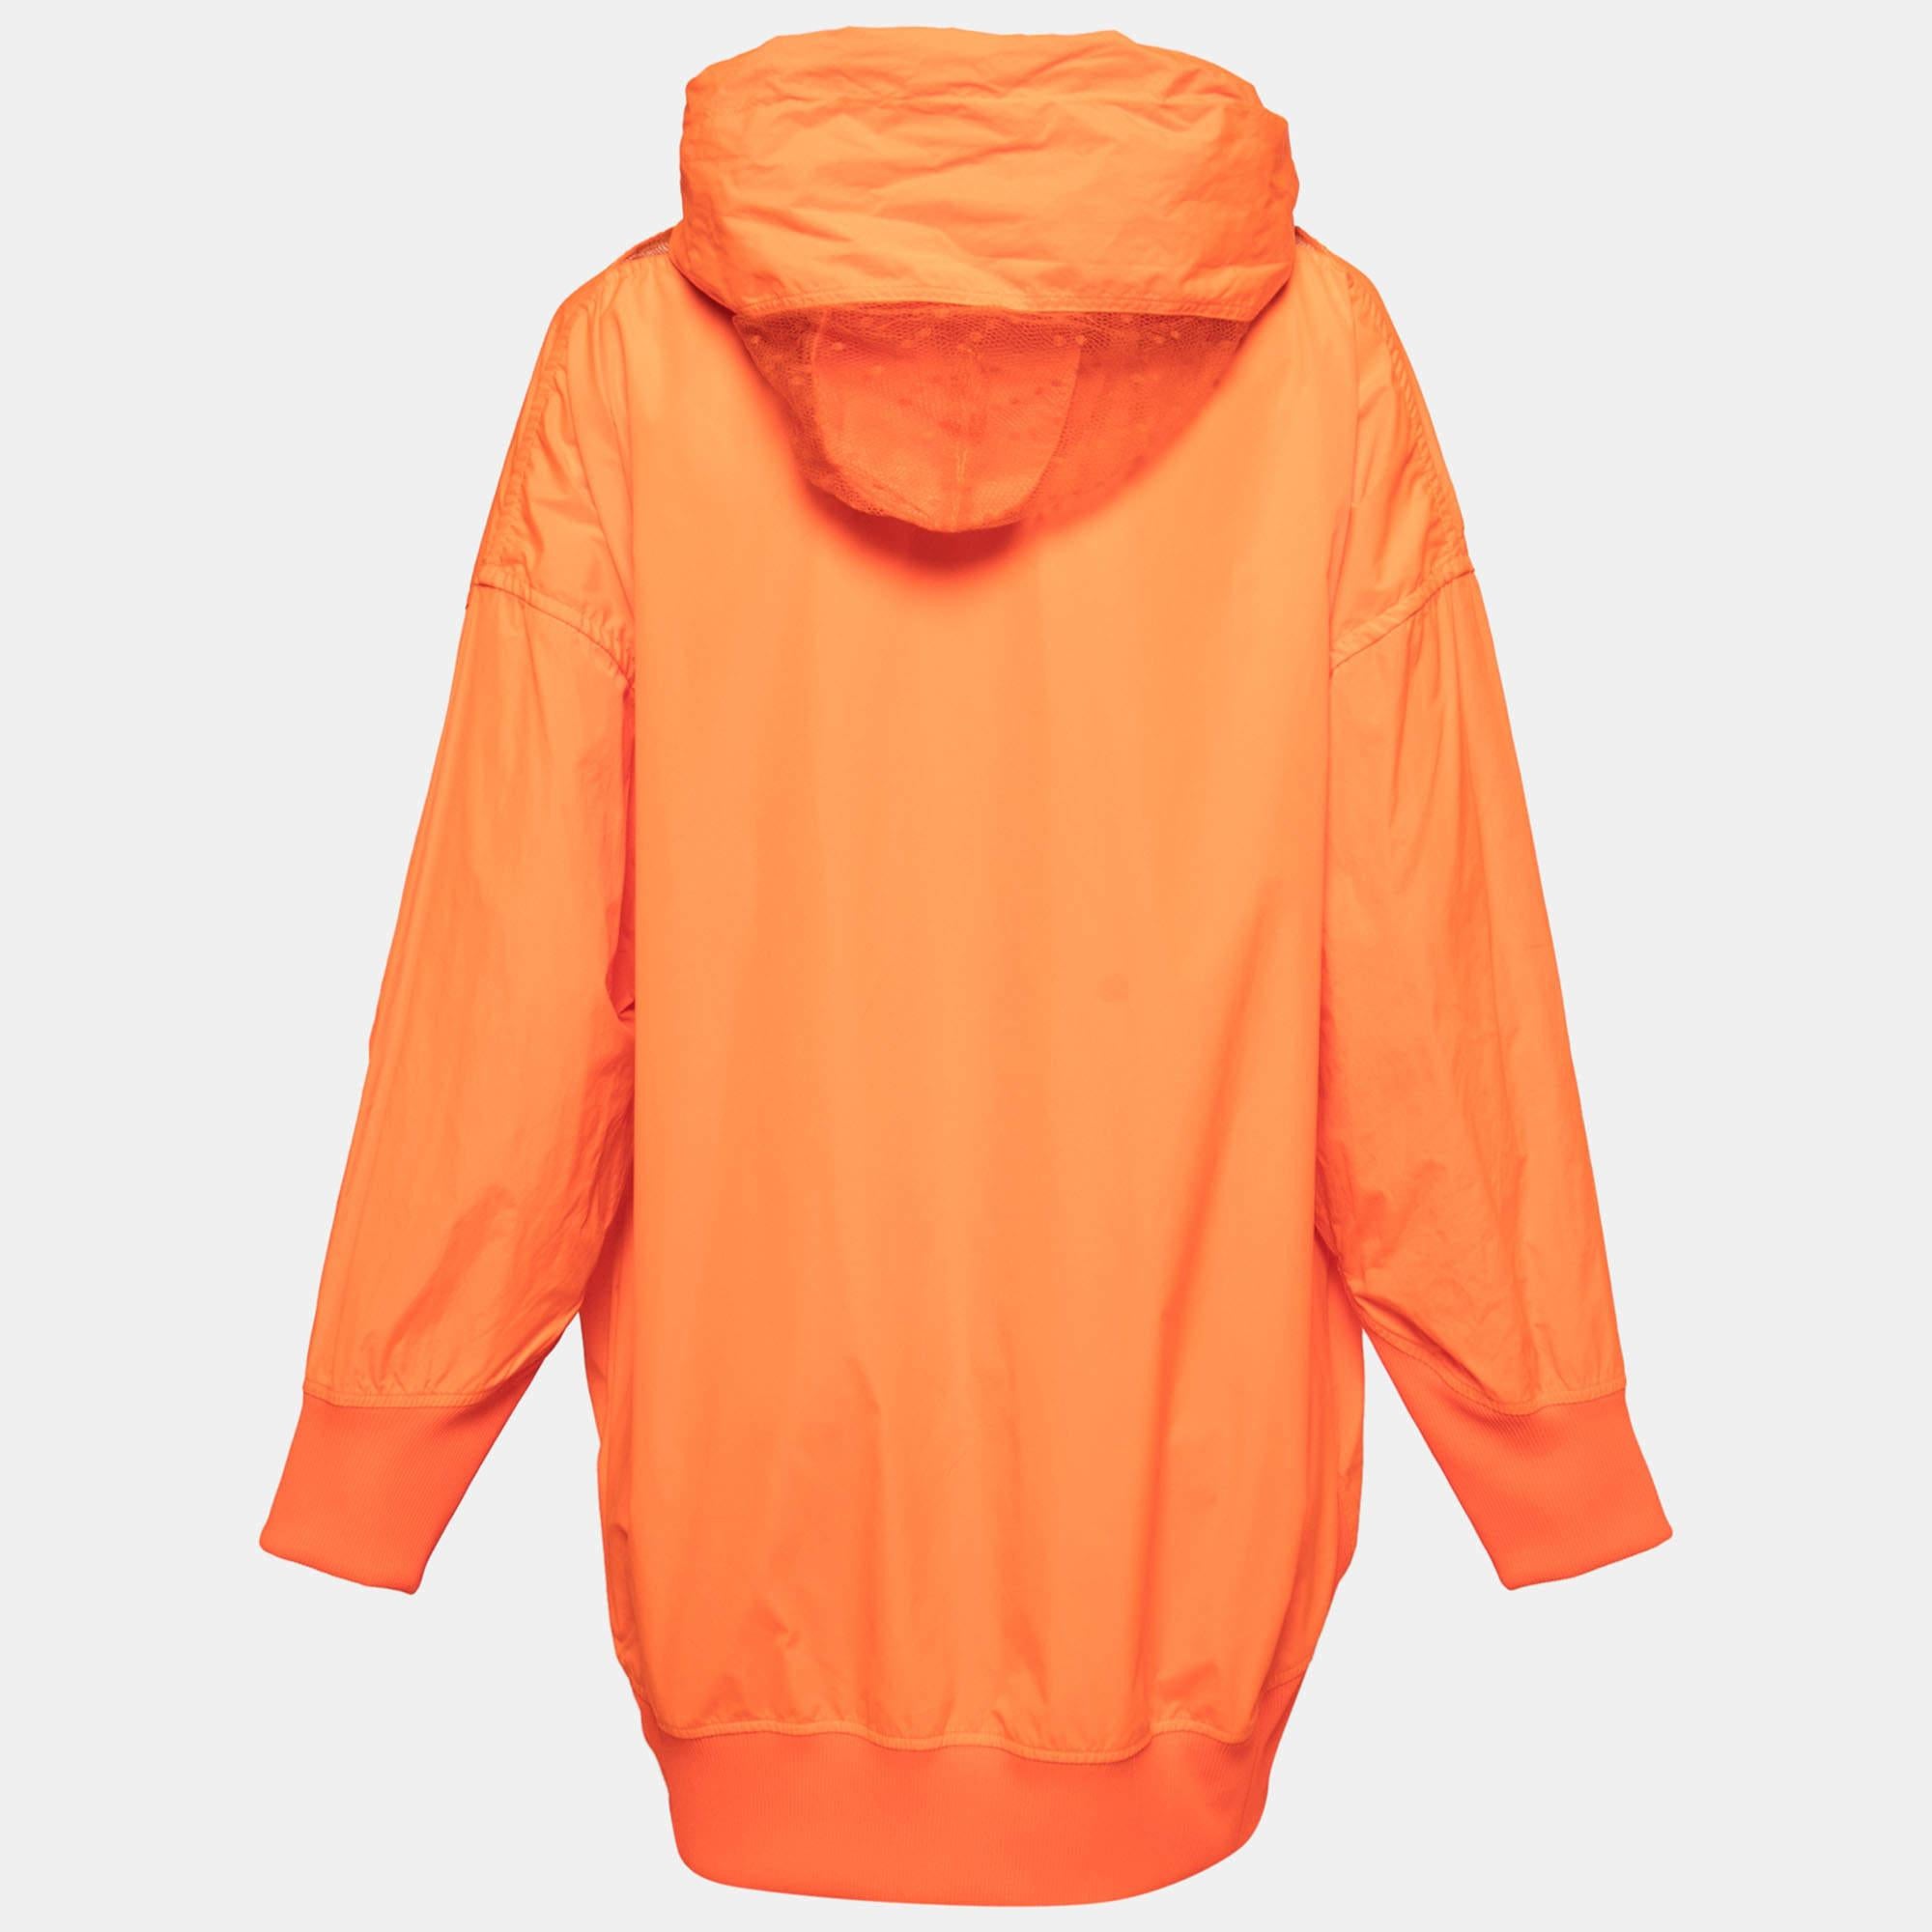 Der RED Valentino Neon Orange Taffeta Zip Front Hooded Coat ist ein leuchtendes und stilvolles Oberbekleidungsstück. Sie ist aus Taft gefertigt und verfügt über einen Reißverschluss an der Vorderseite und eine Kapuze für zusätzliche Funktionalität.